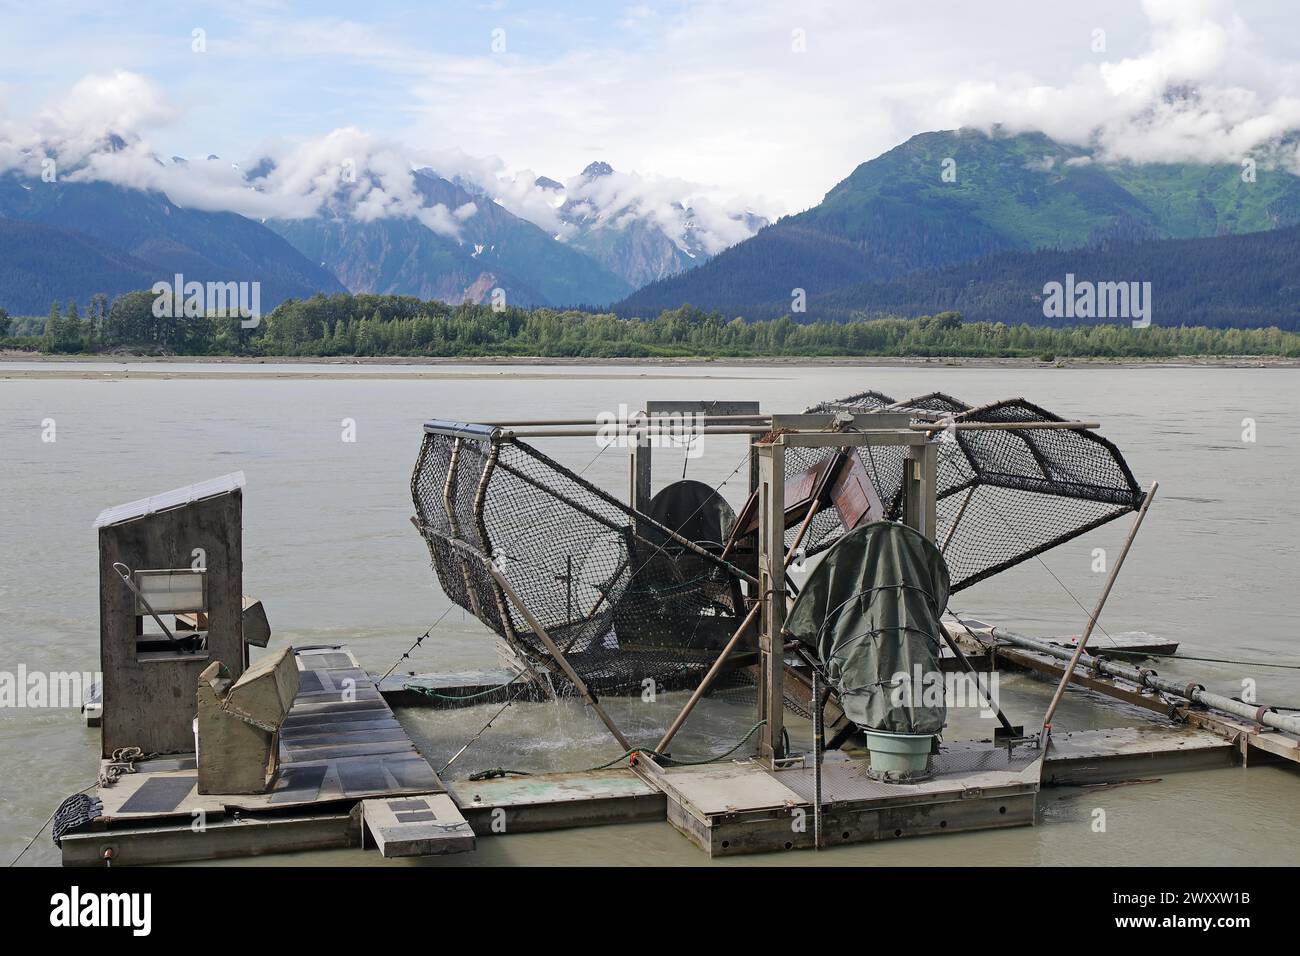 Vieille roue à poissons, méthode de pêche des indigènes nord-américains, rivière Chilkoot, Haines, Alaska, États-Unis Banque D'Images